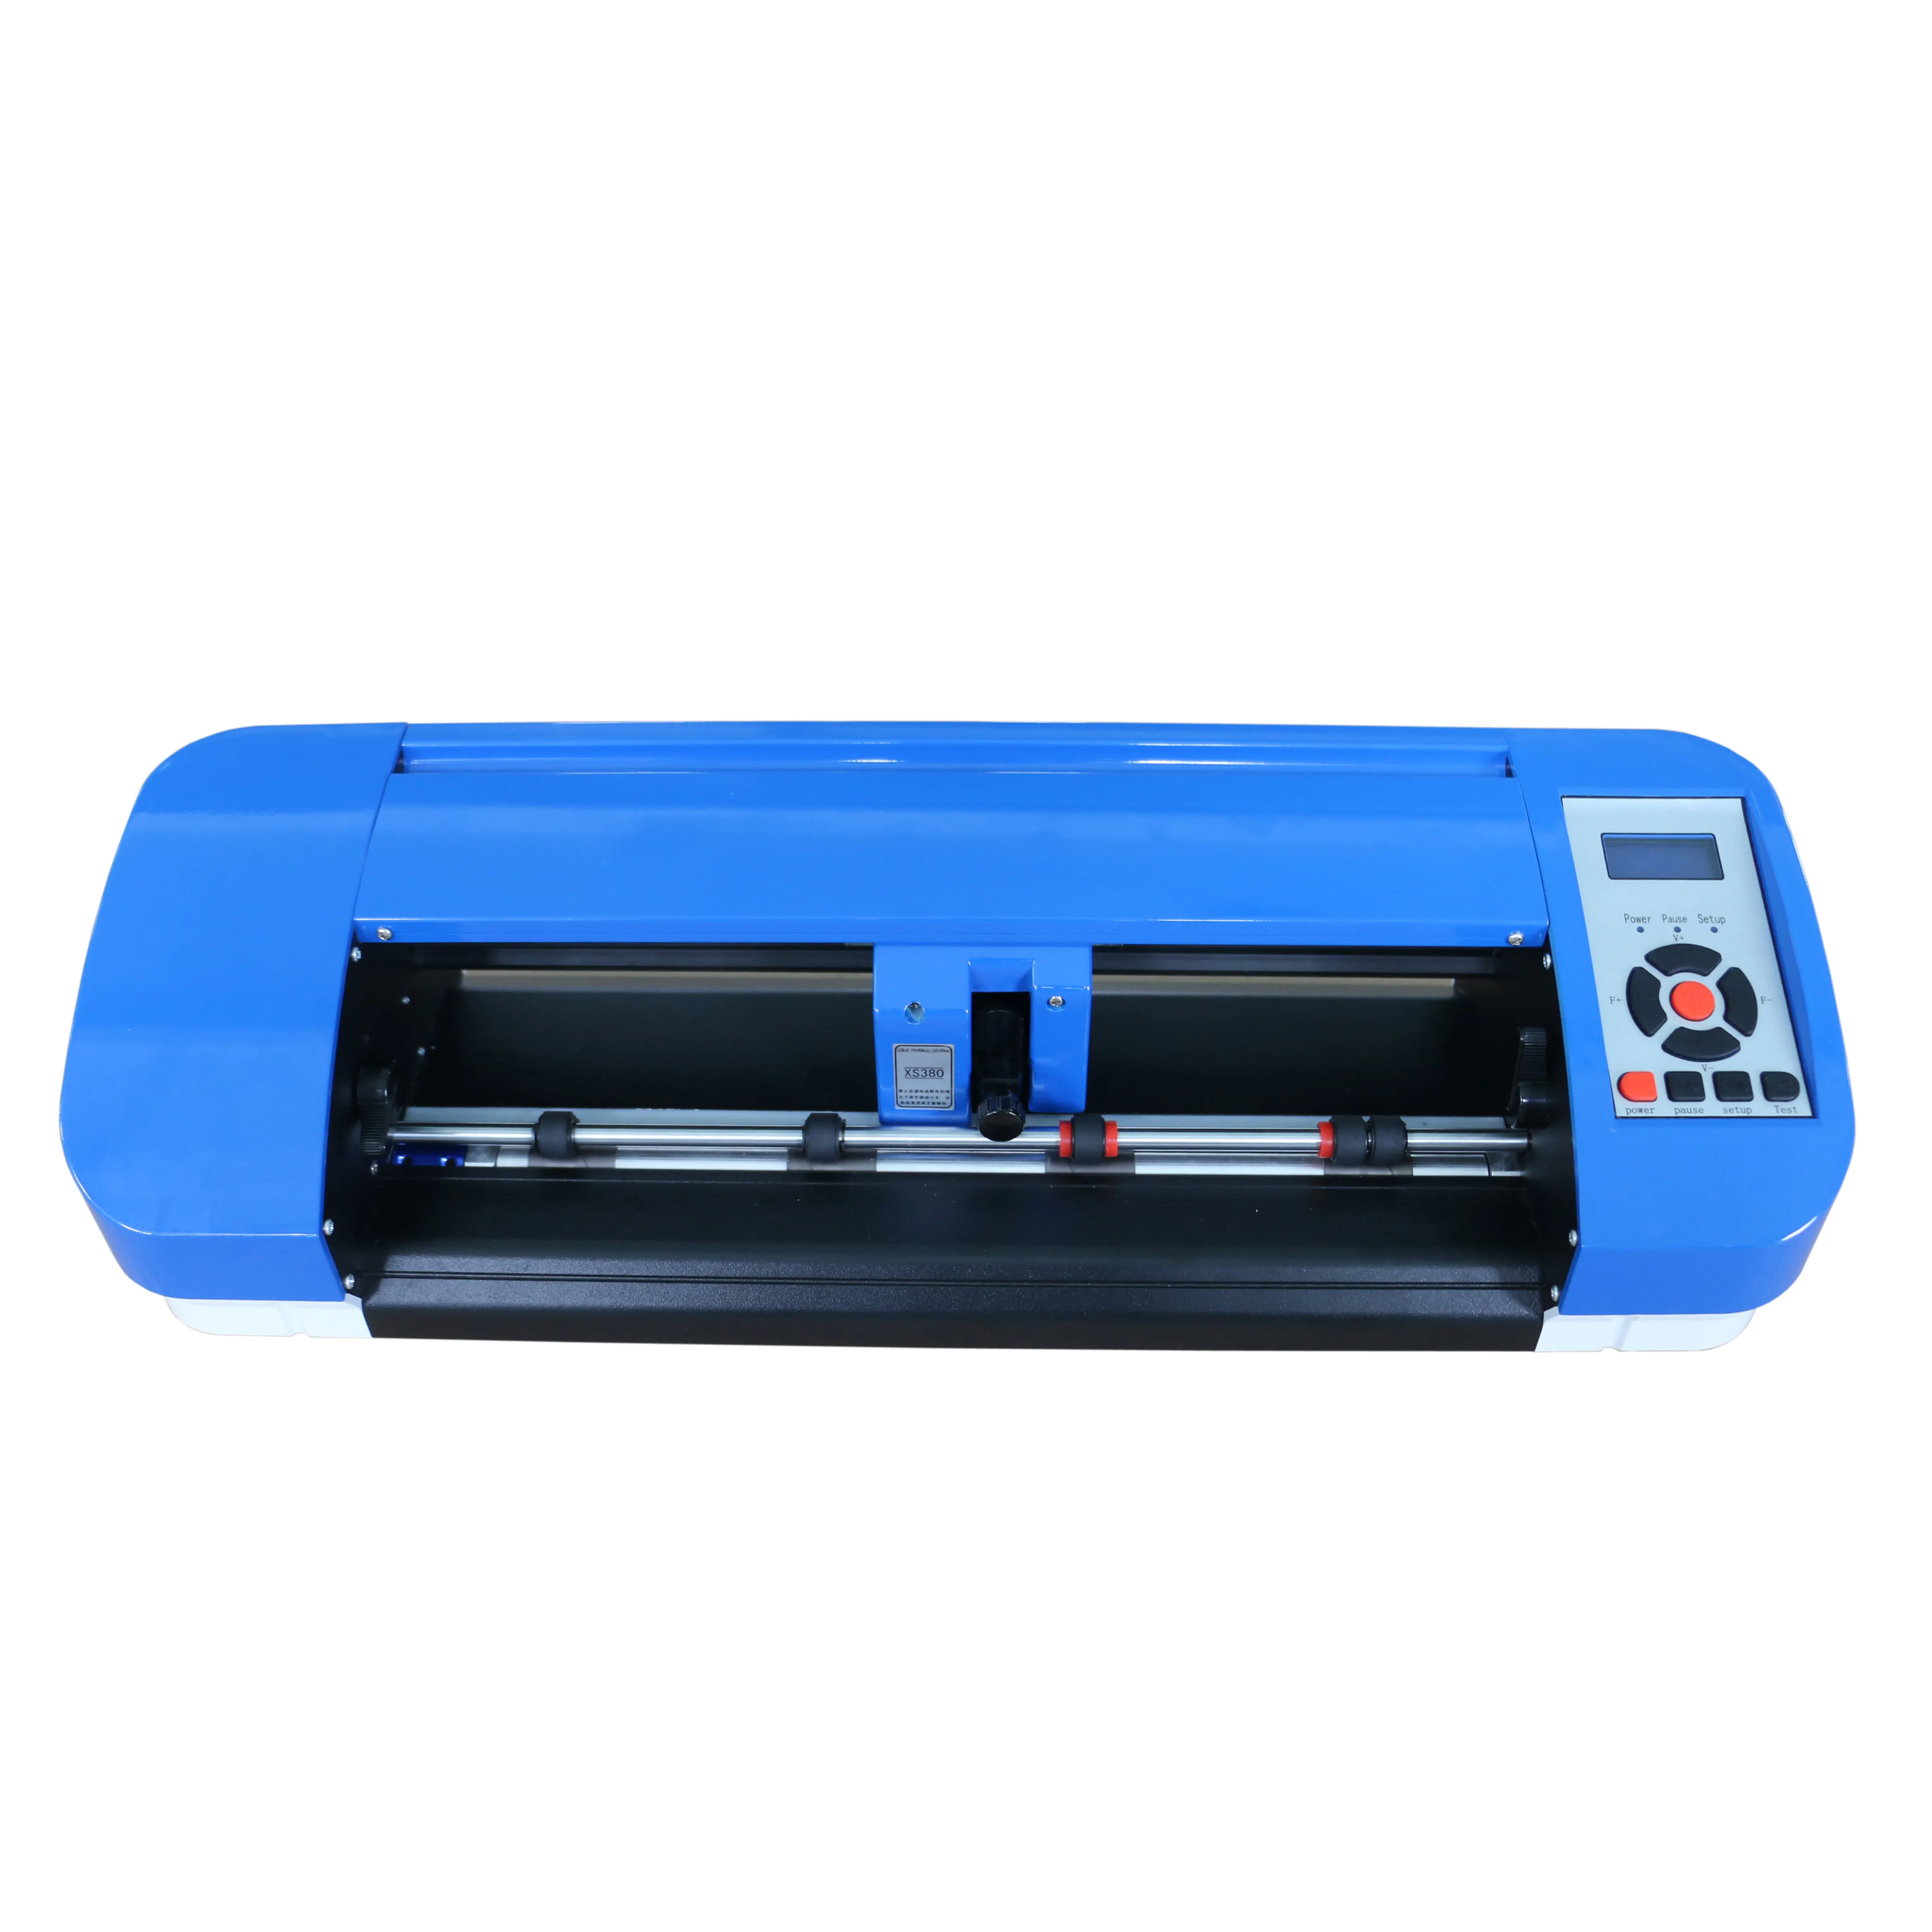 Advance Vinyl Cutter Contour Cutting Plotter Vinyl Sticker Cutter Machine with Cutter Plotter